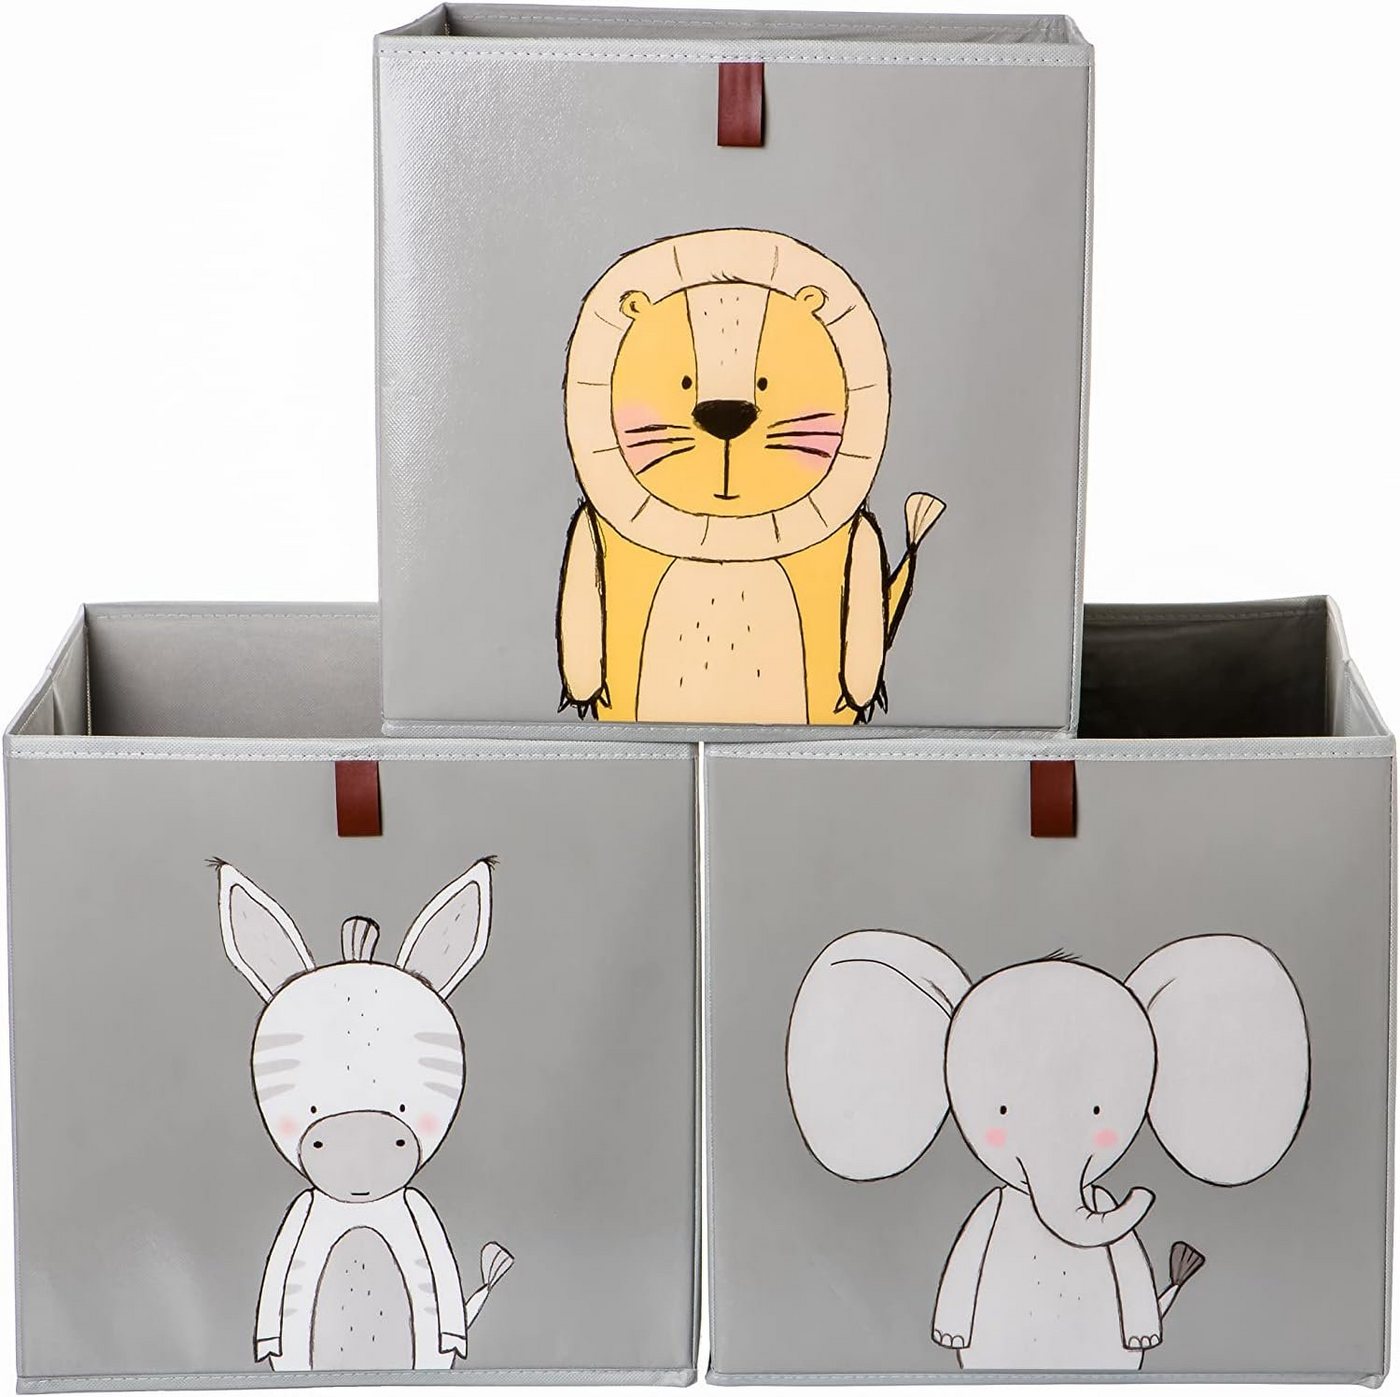 2friends Faltbox 3er Set Aufbewahrungsboxen für Kallax Boxen - Kinder Spielzeugkiste (33L x 33B x 33H cm), Abwaschbar Kallax Boxen mit Schlaufe zum Herausziehen Grau von 2friends